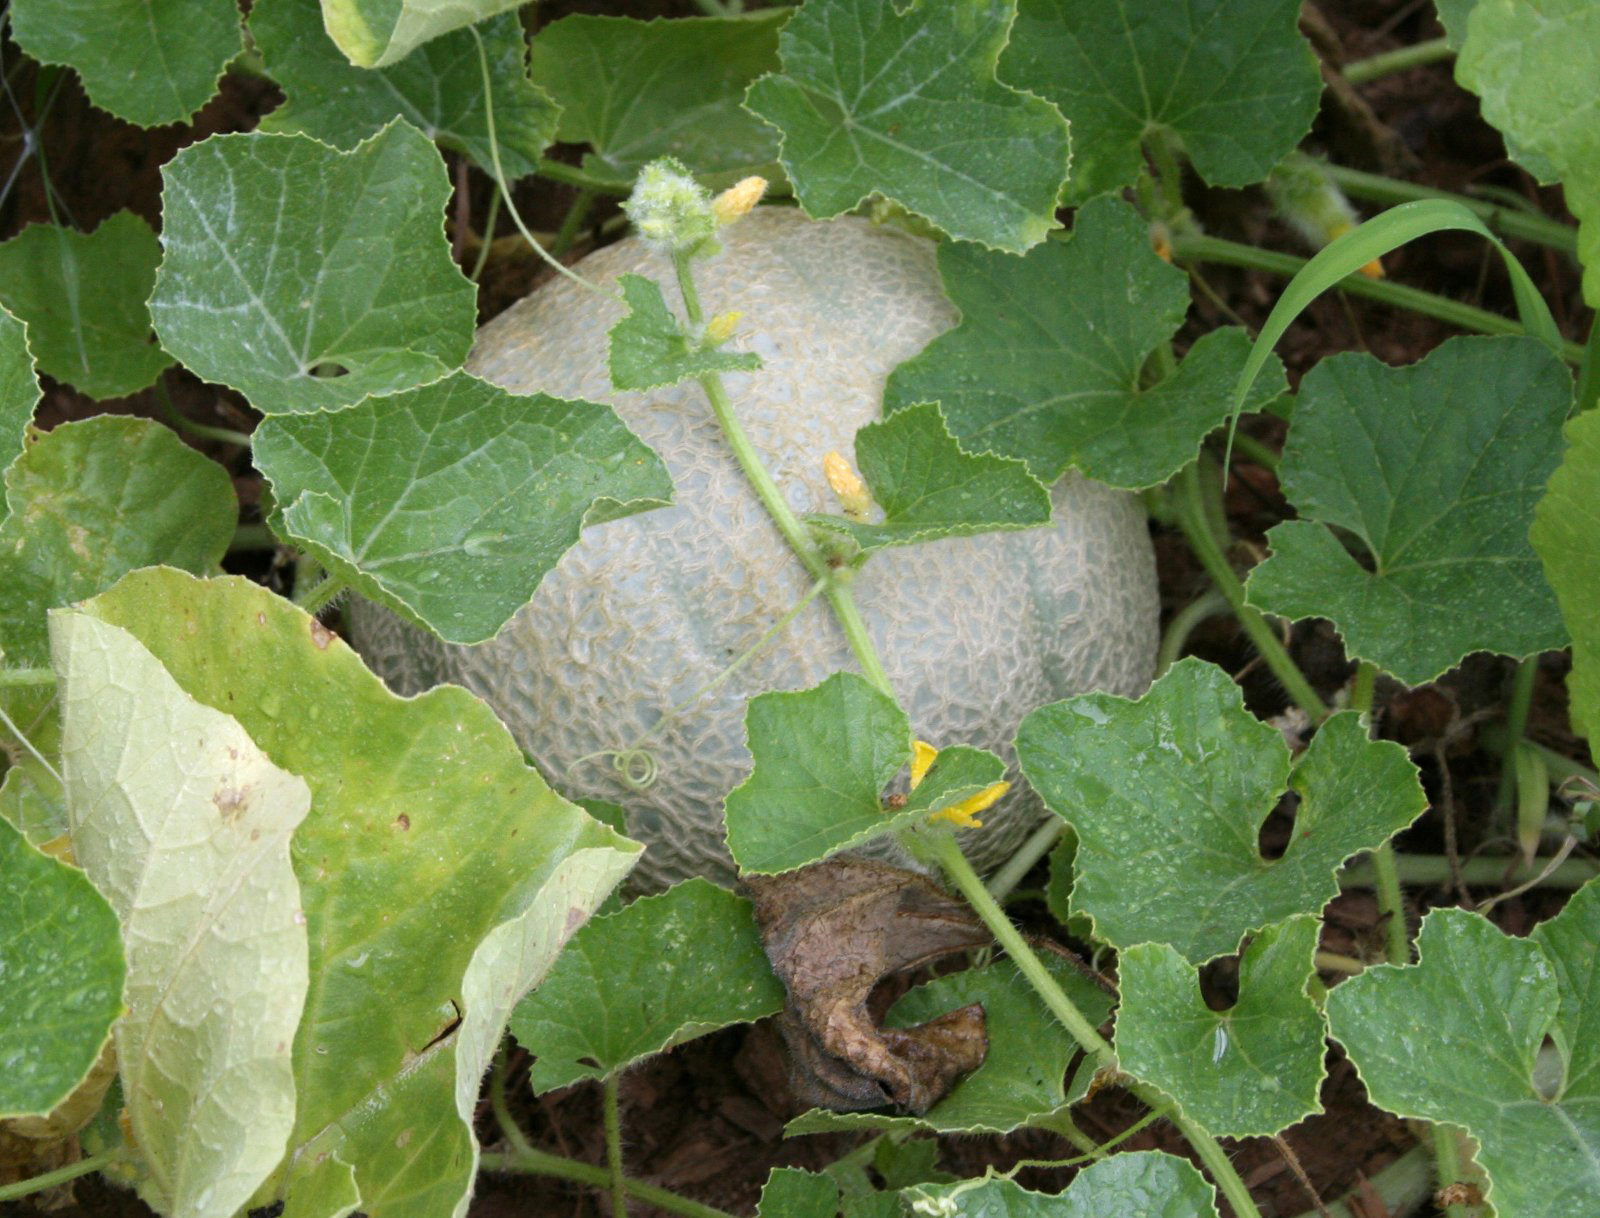 A canteloupe grows on a vine in a central Georgia backyard garden.